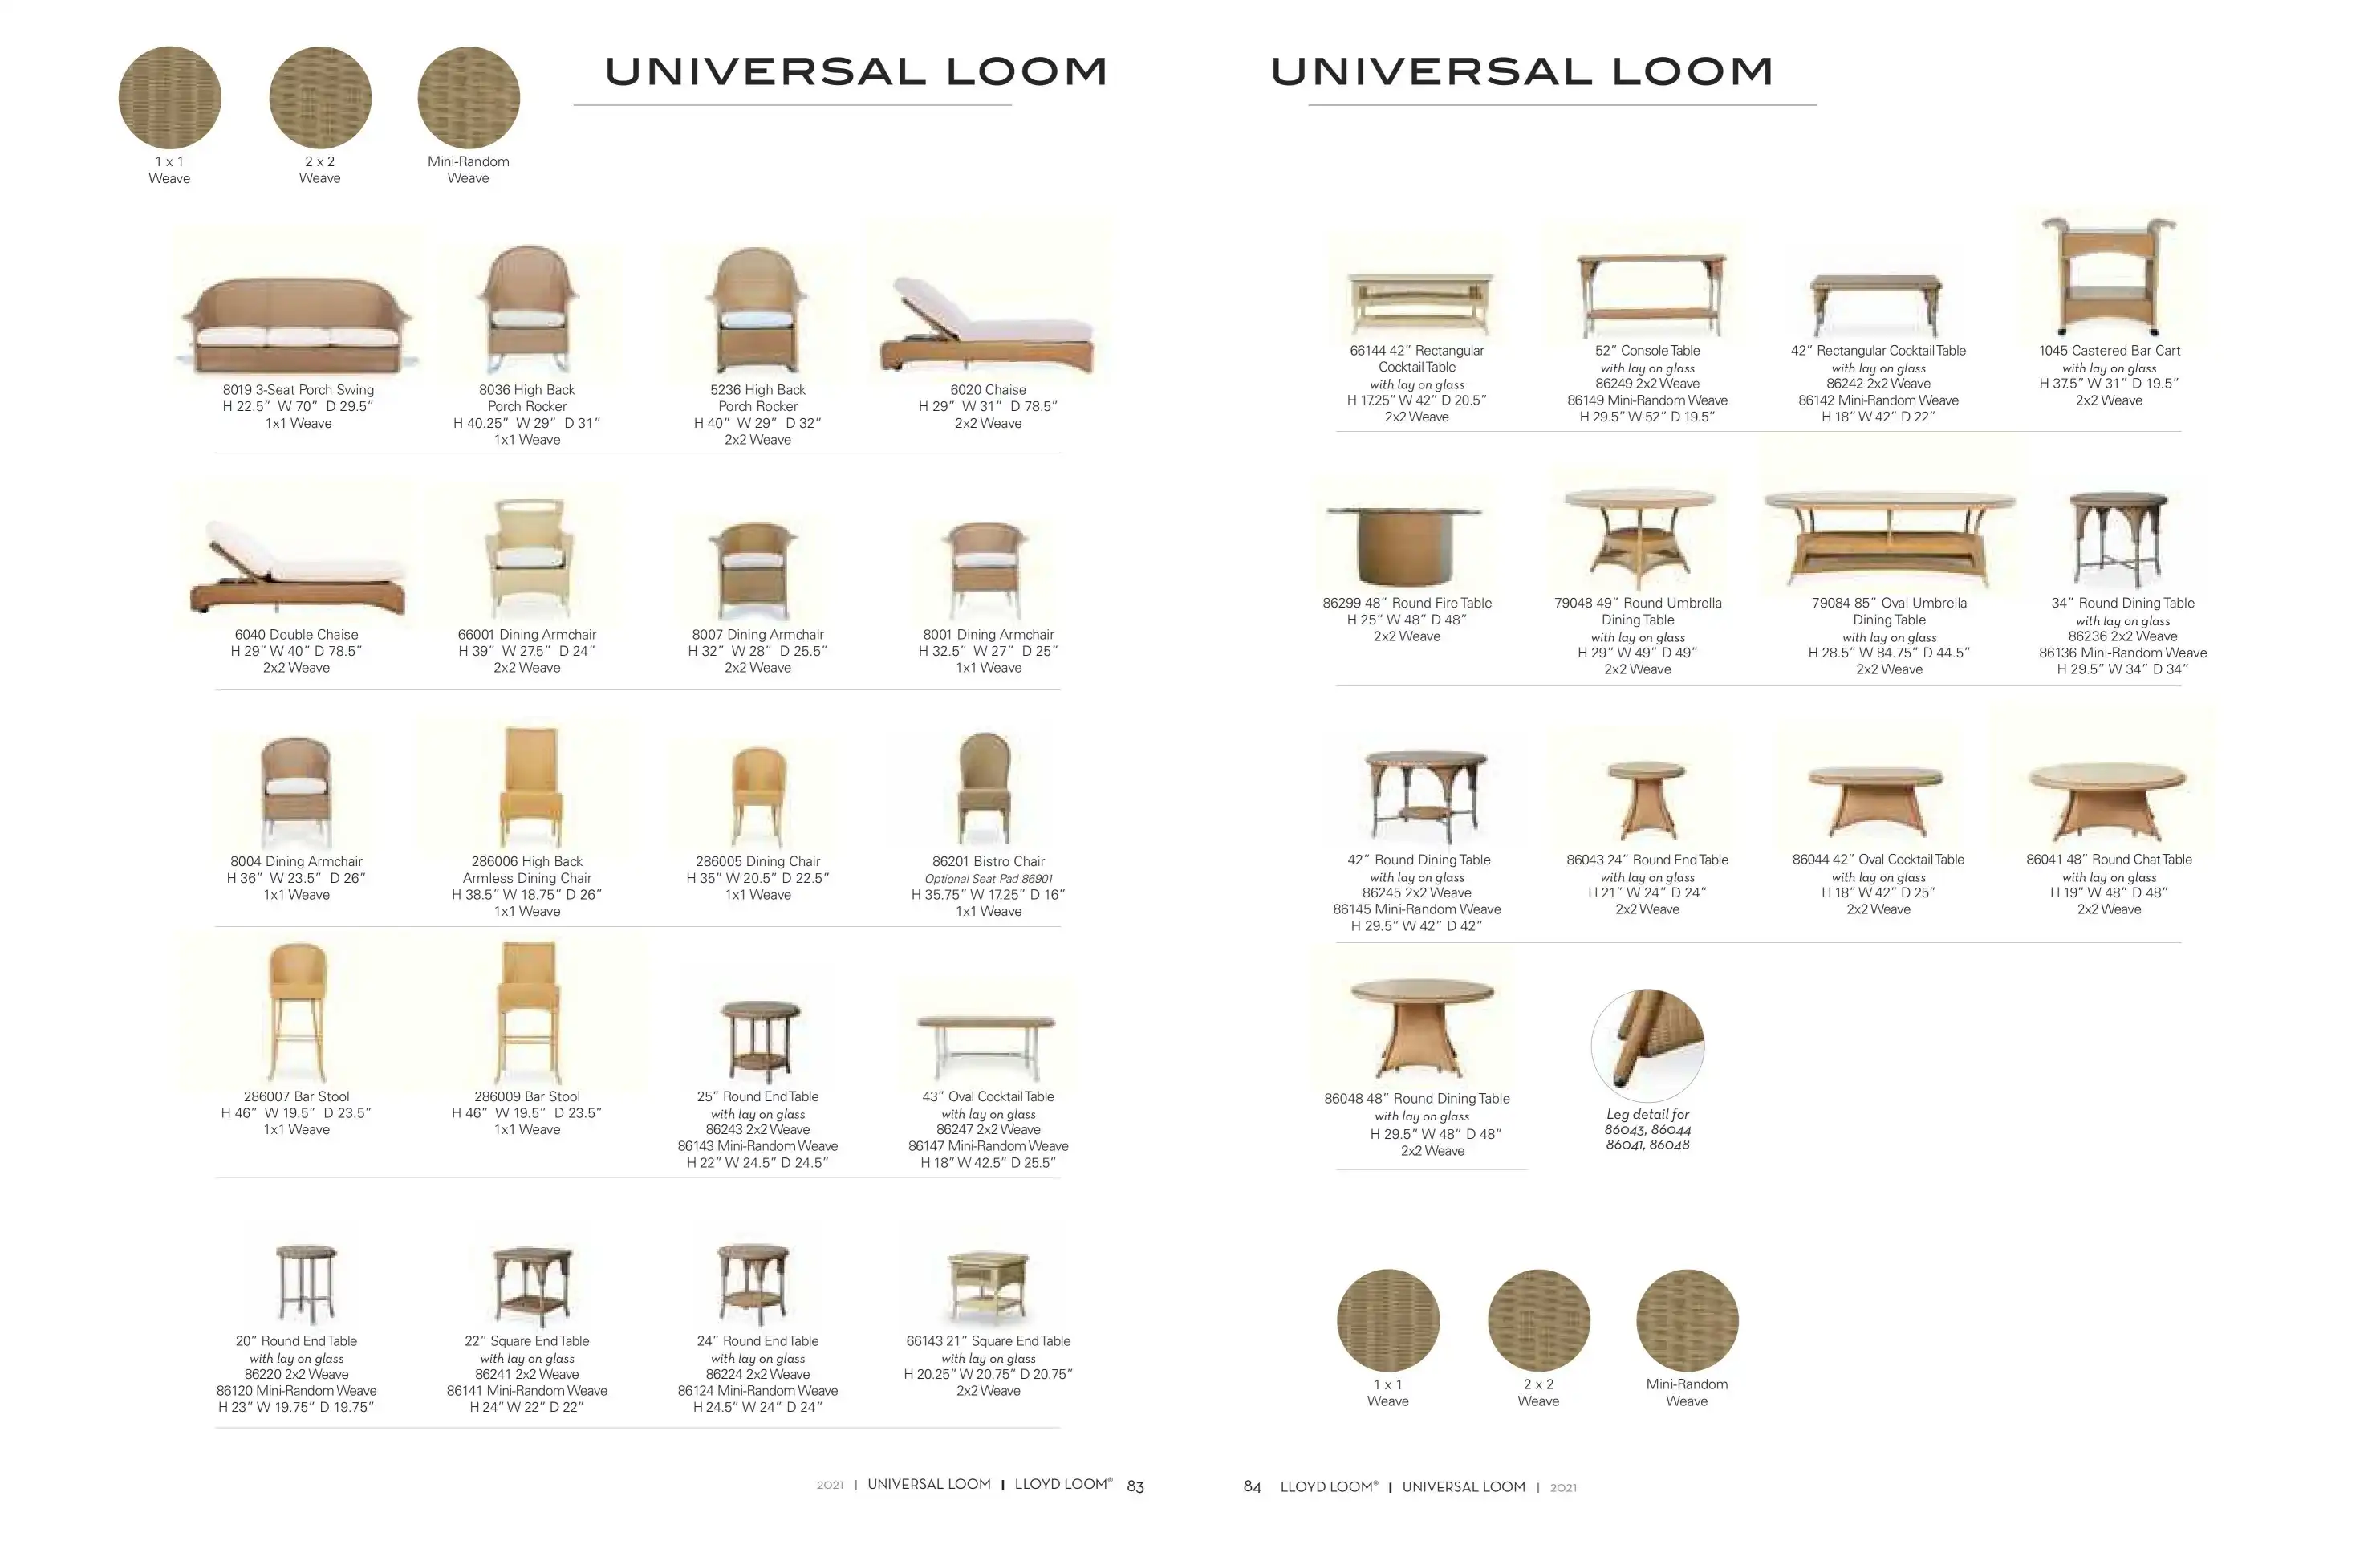 UNIVERSAL Loom (2) (Lloyd Loom) by Lloyd Flanders